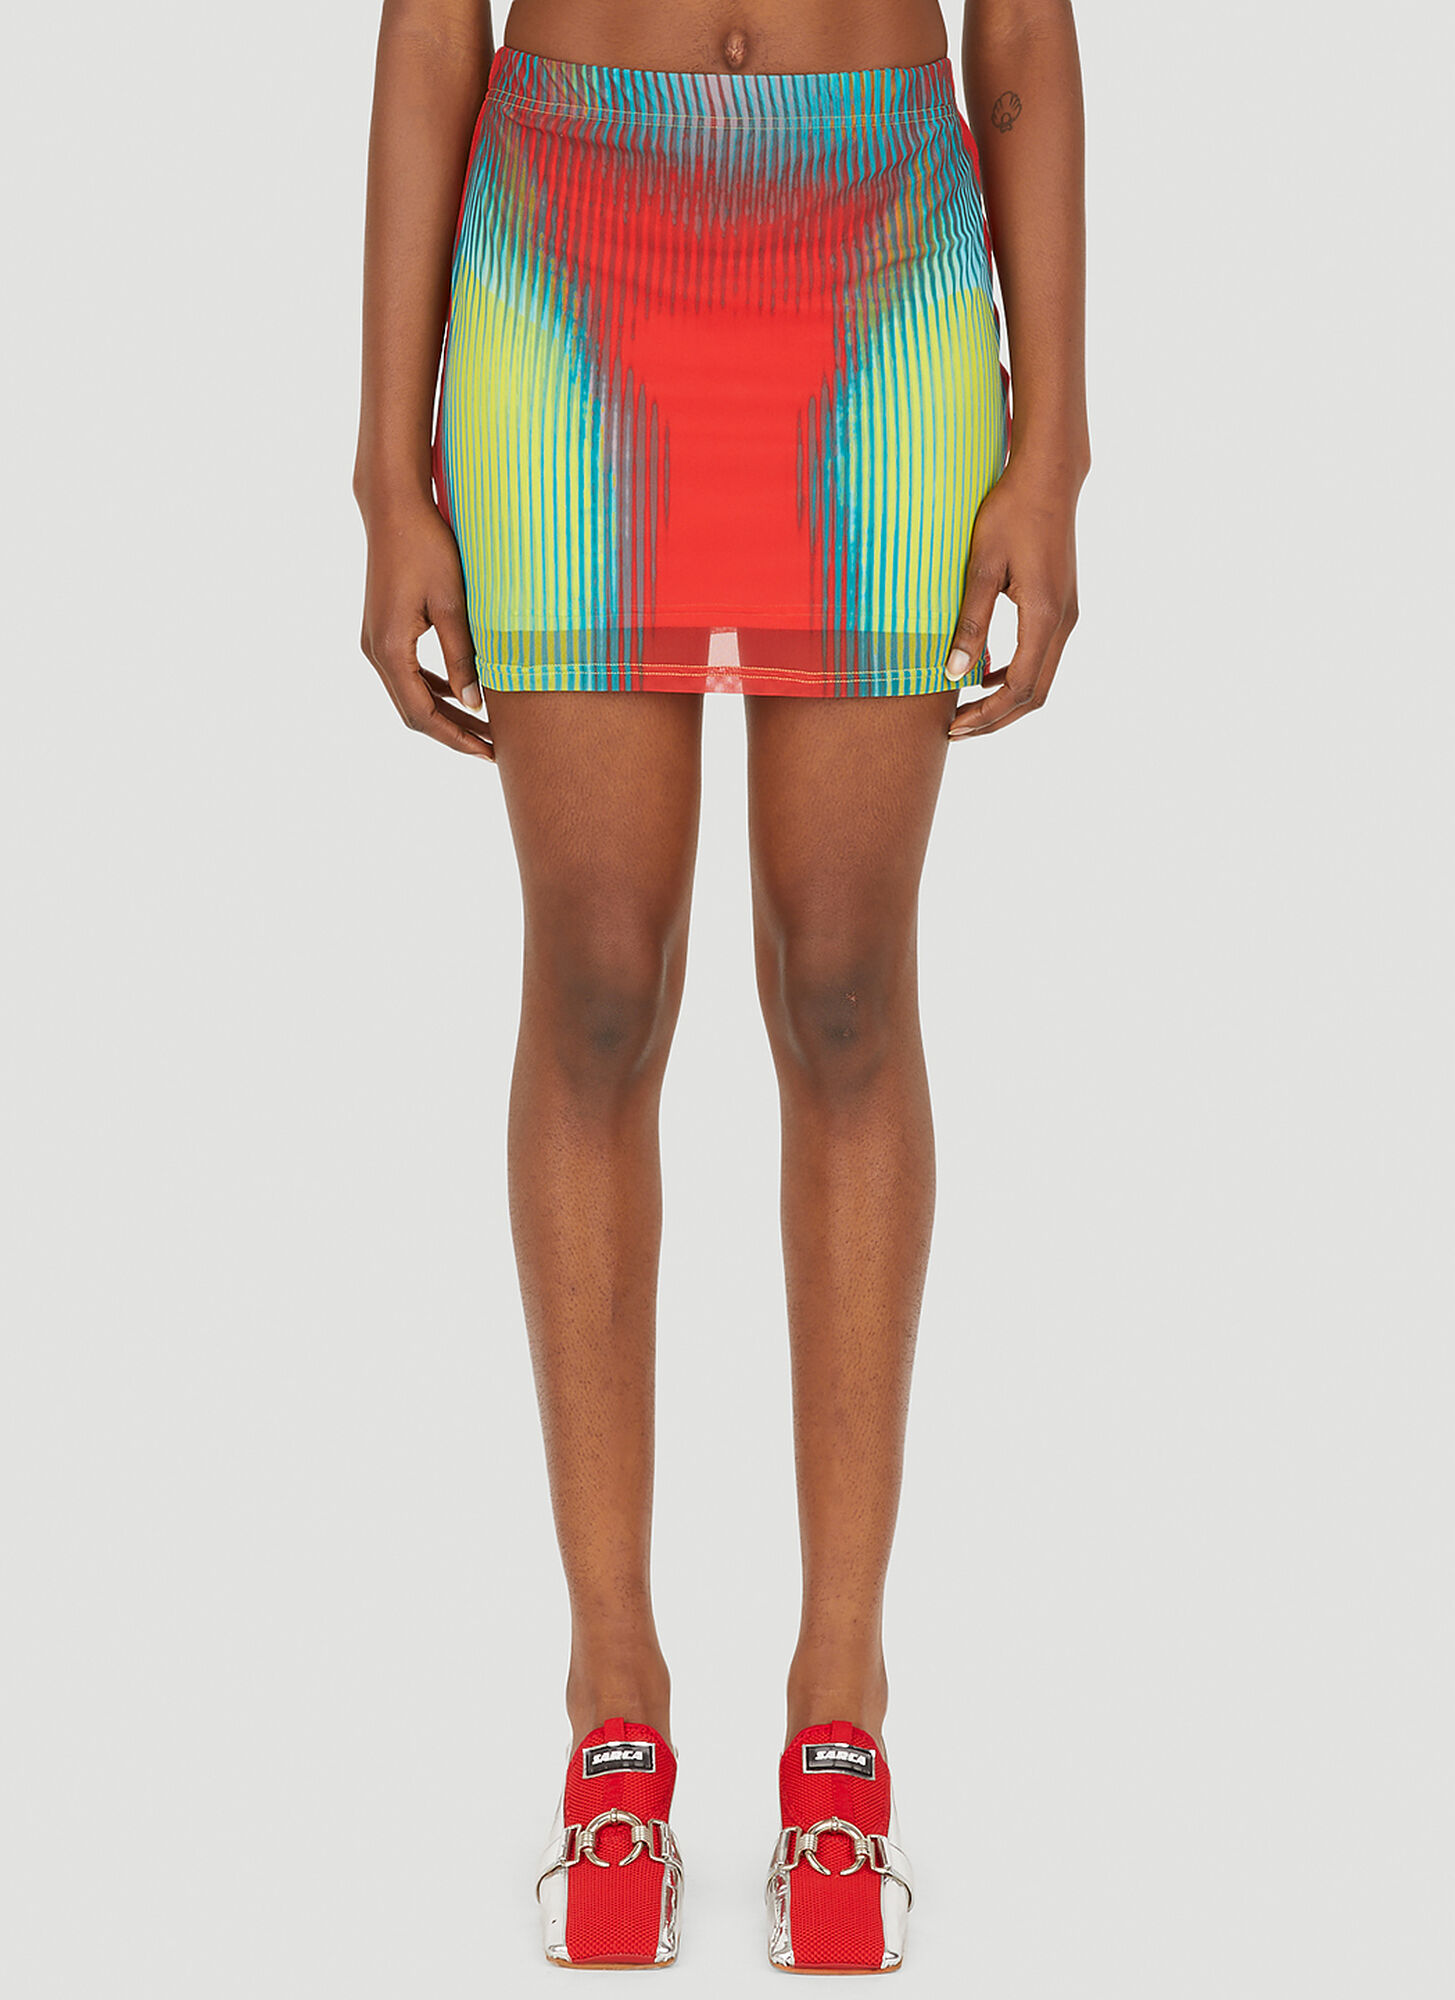 Y/project X Jean Paul Gaultier Body Morph Mini Skirt